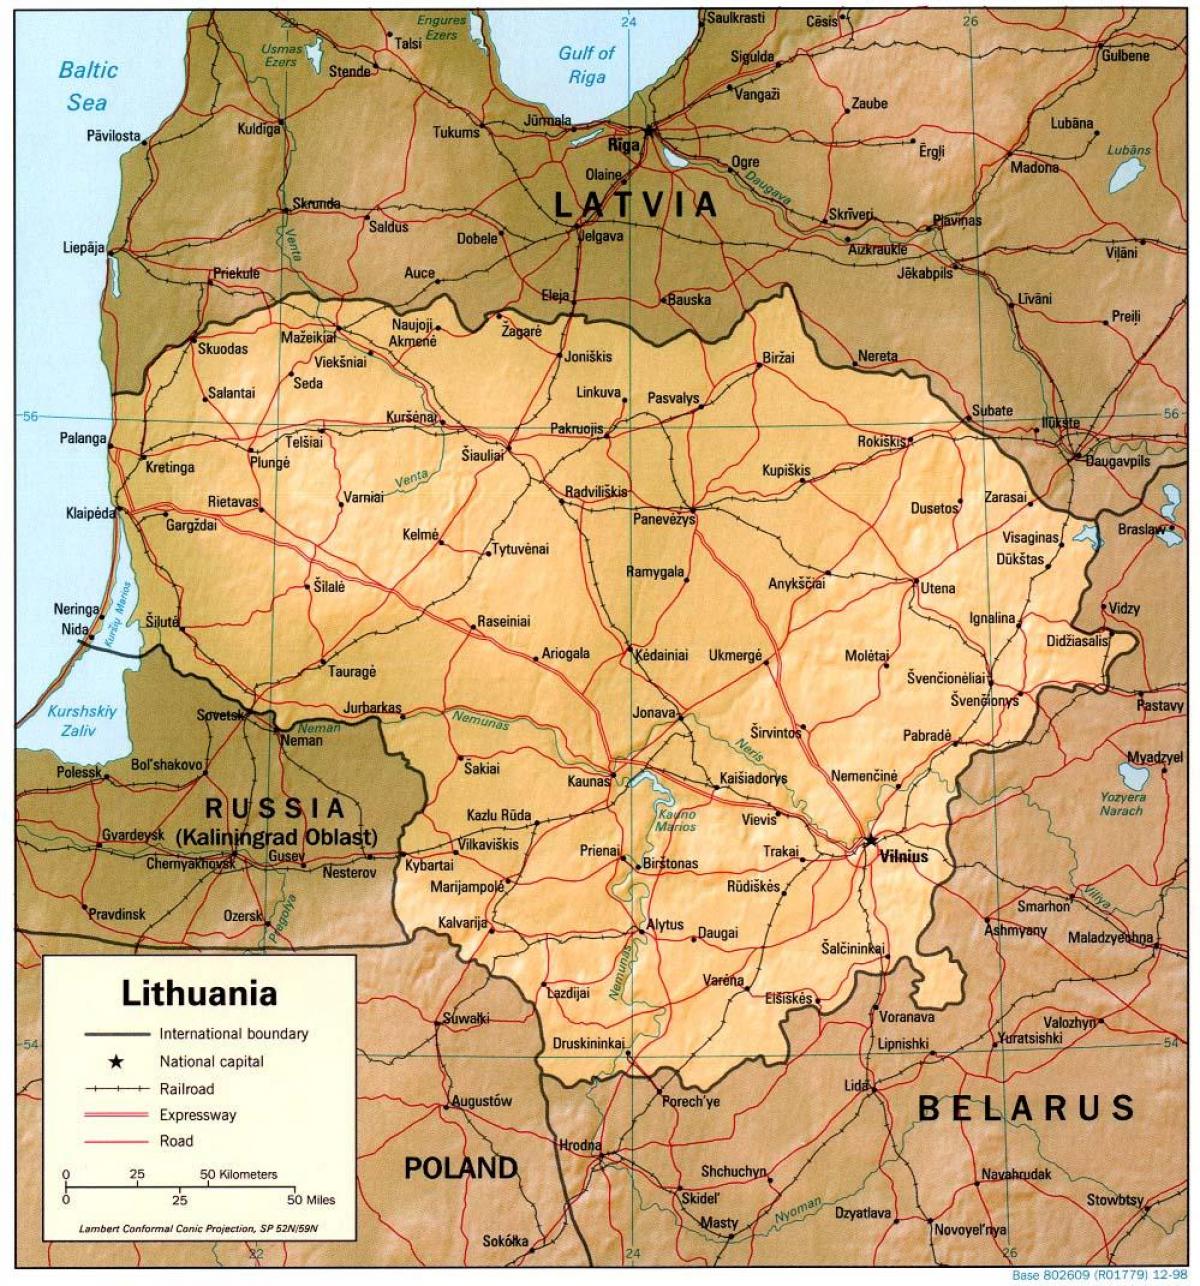 नक्शा लिथुआनिया की